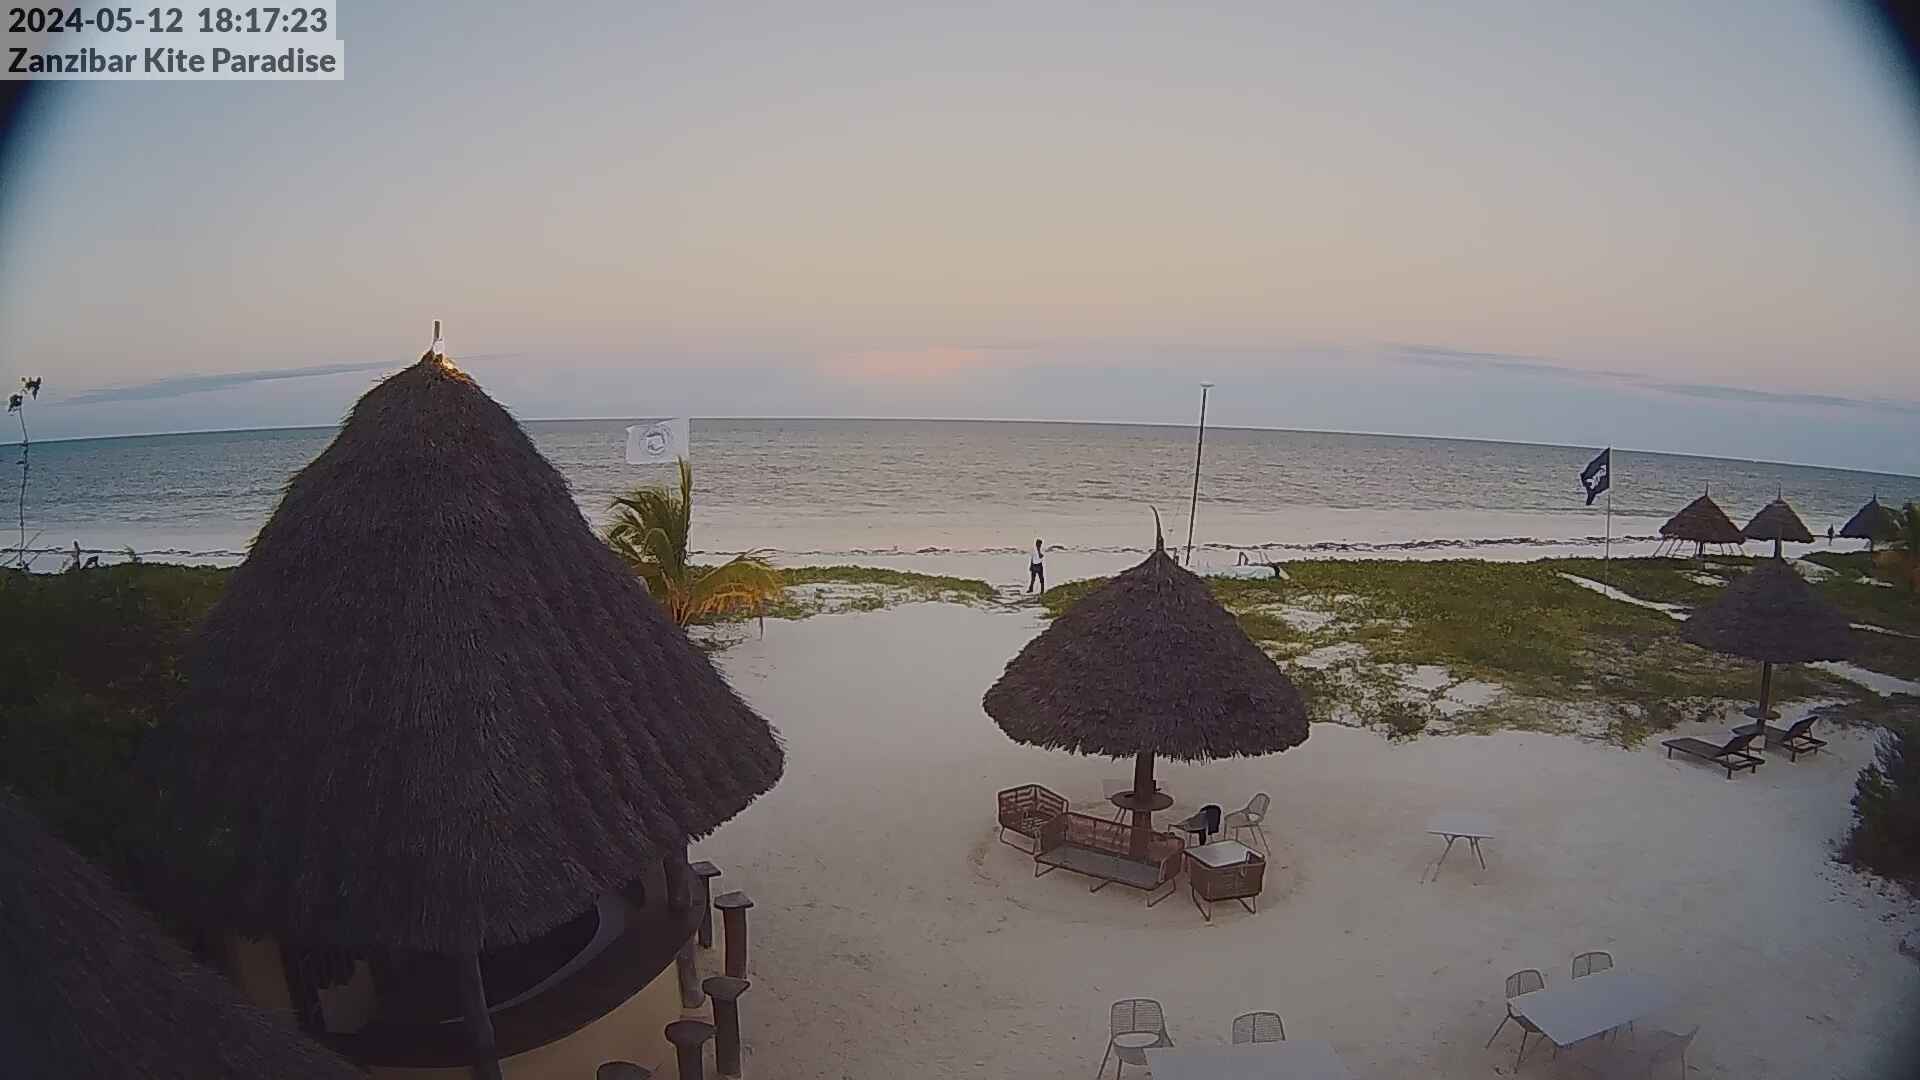 Paje Beach (Zanzibar) Mar. 18:18